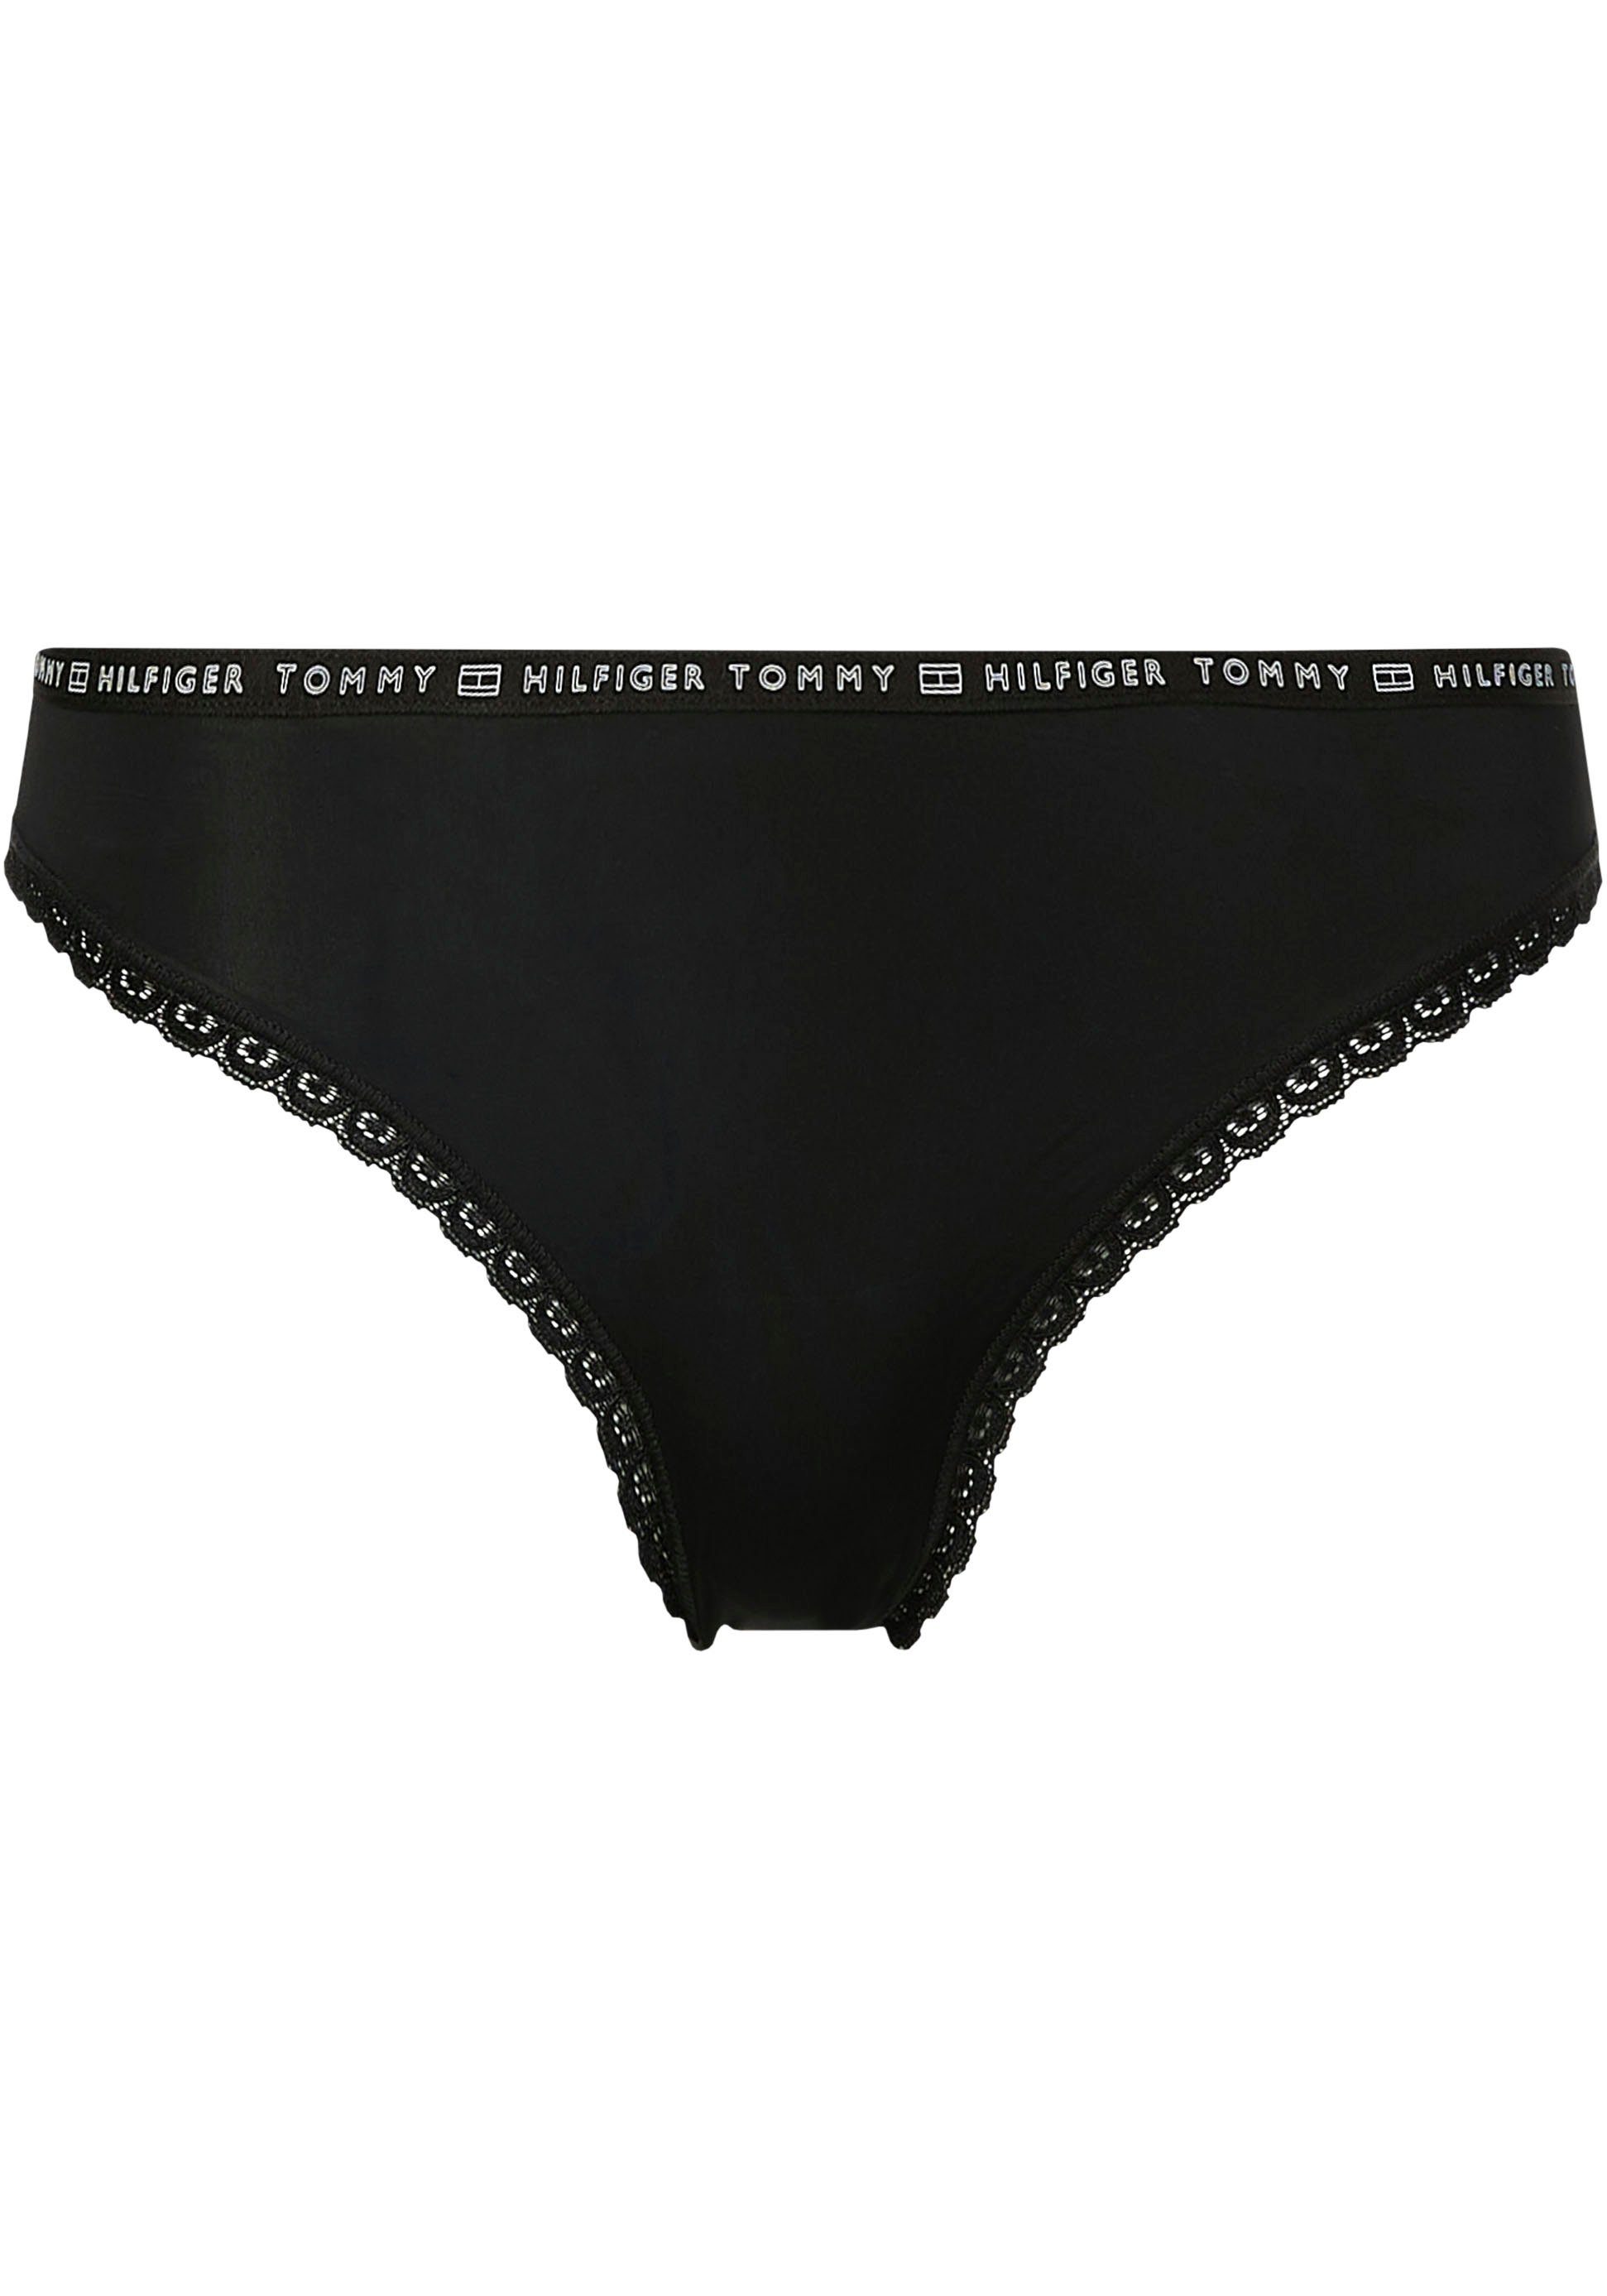 Bikinislip BIKINI Tommy 3P 6 Tommy mit Hilfiger Spitzenkante Black/Black/Black Underwear Hilfiger 3er-Pack) (Packung, Logo-Elastiktape